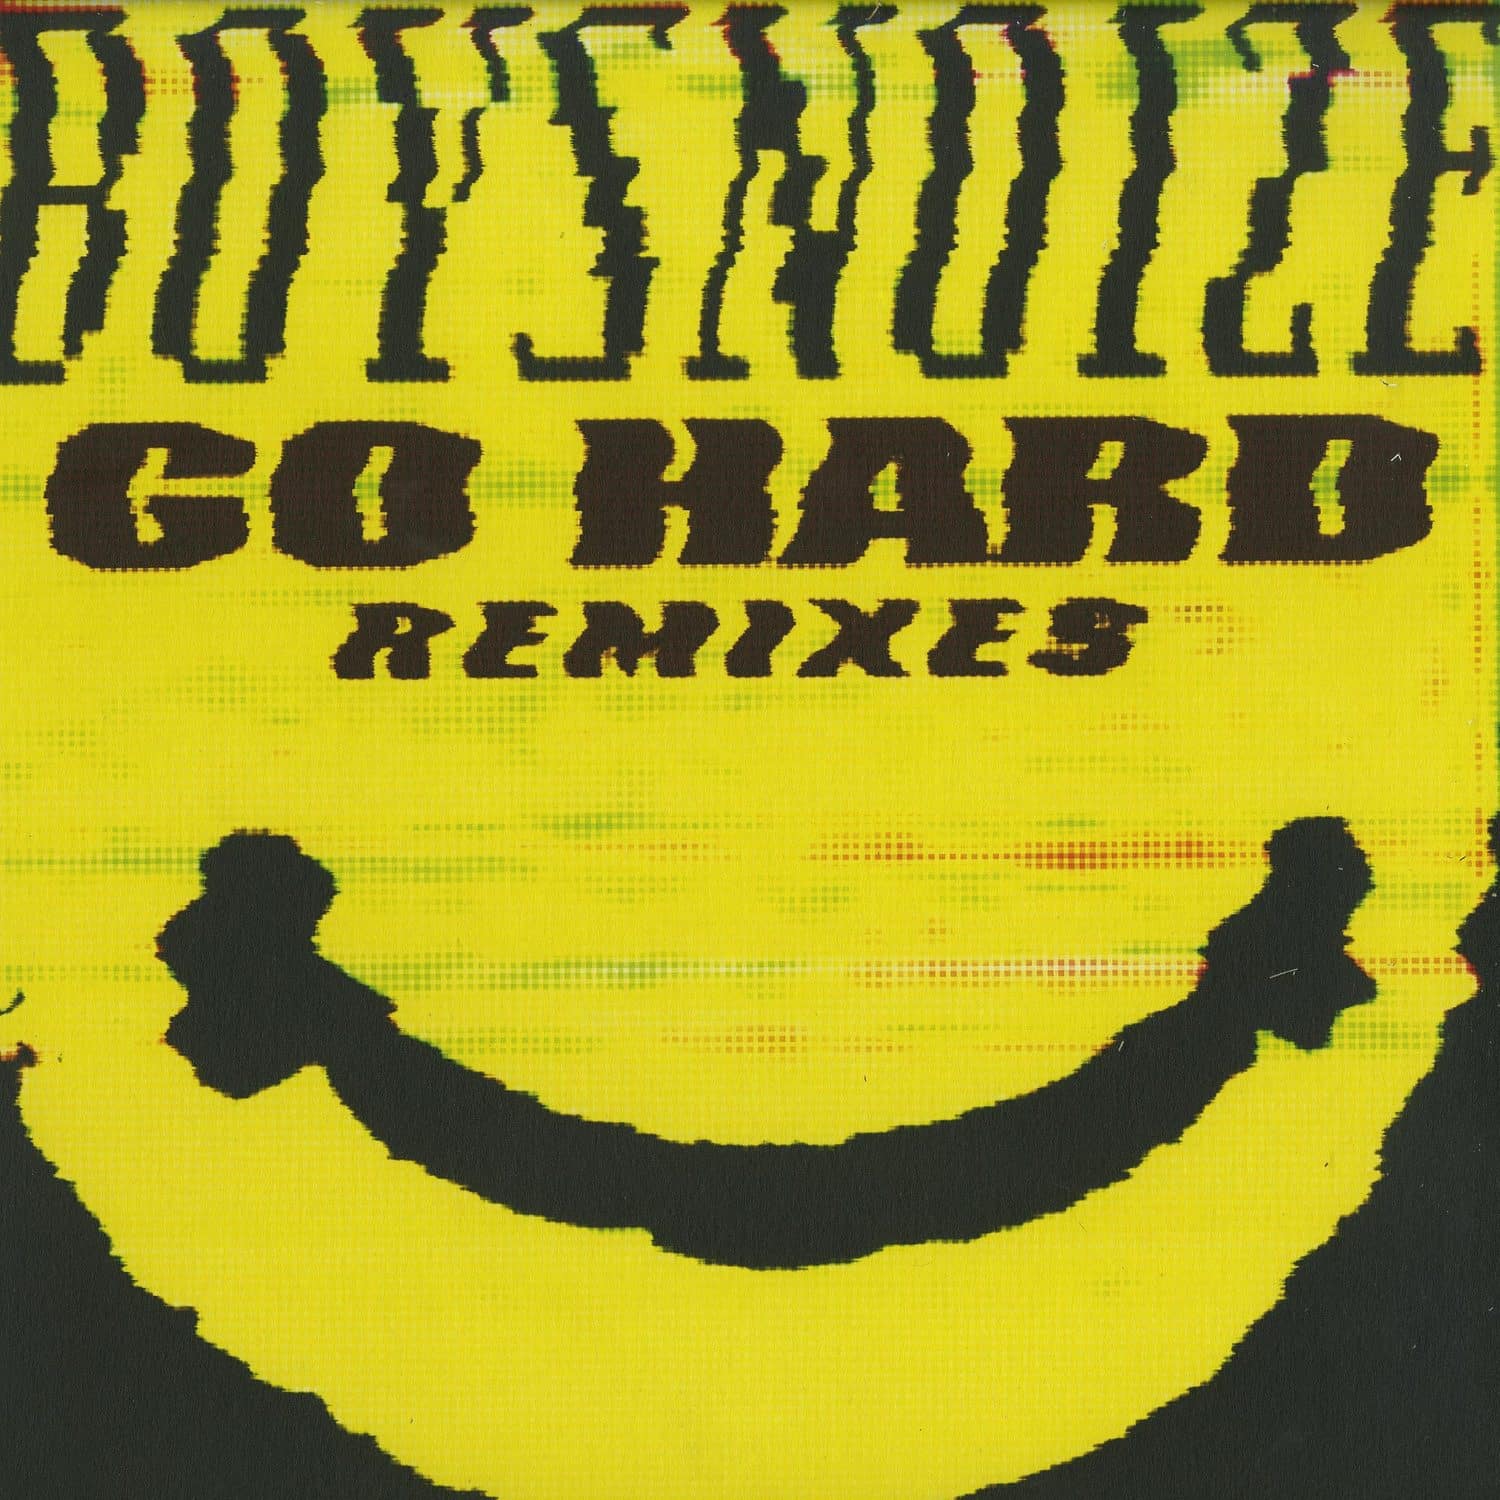 Boys Noize - GO HARD - THE REMIXES